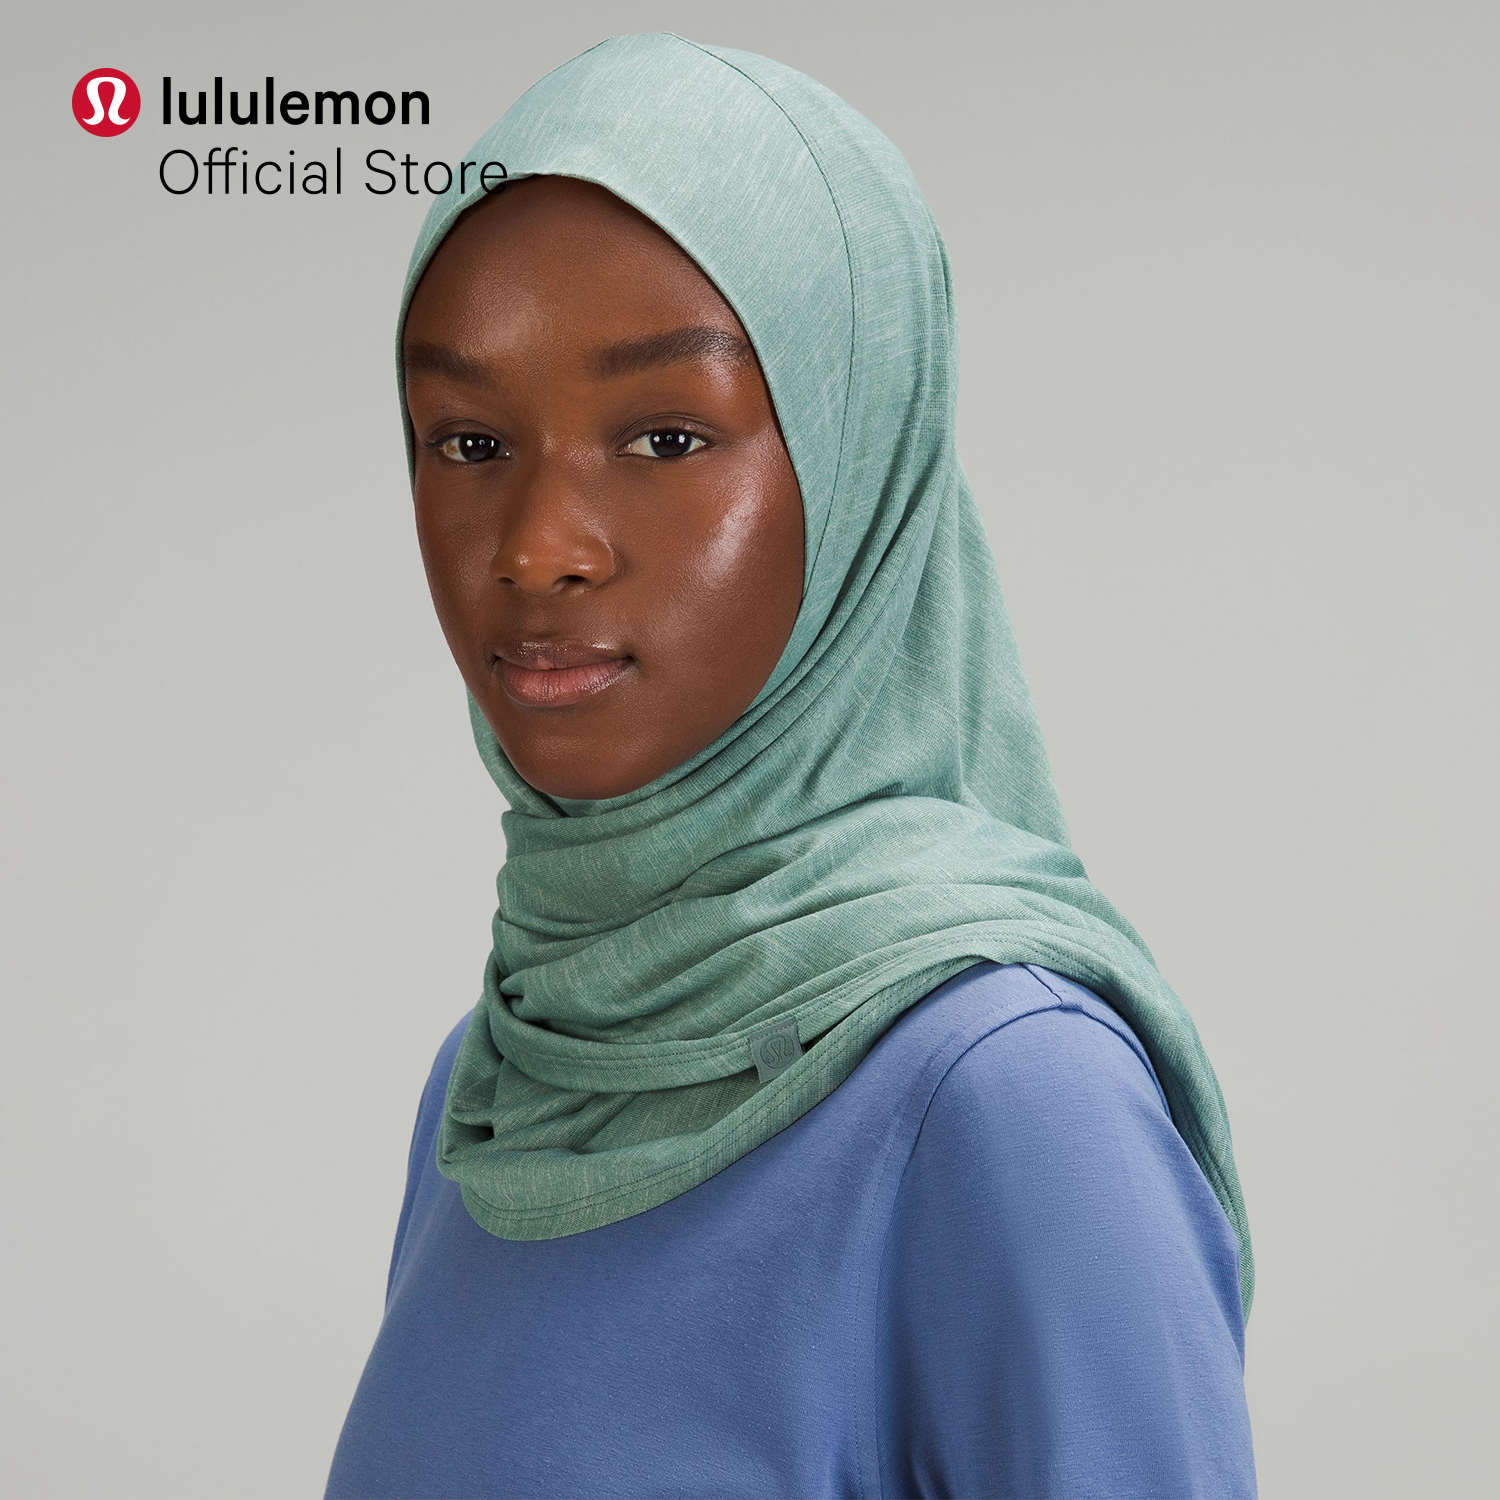 lululemon Women's Pull-On-Style Hijab